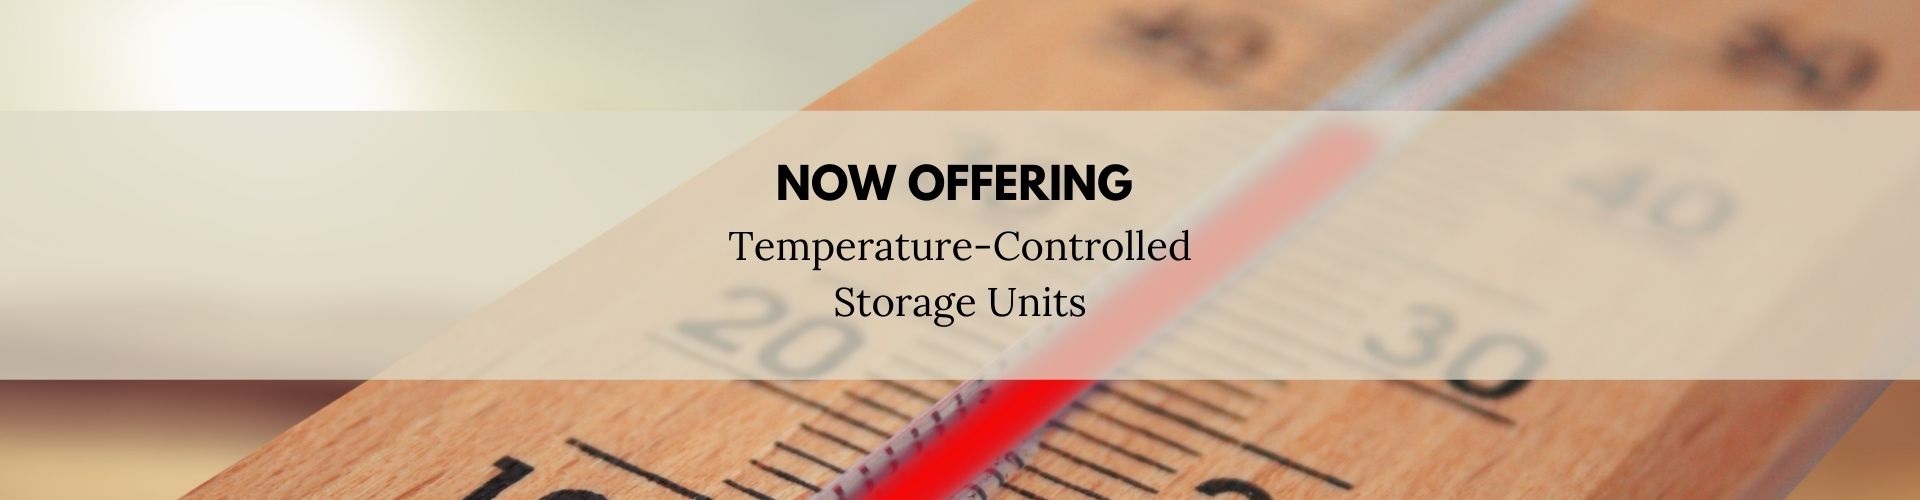 temperature controlled storage units in virginia beach va